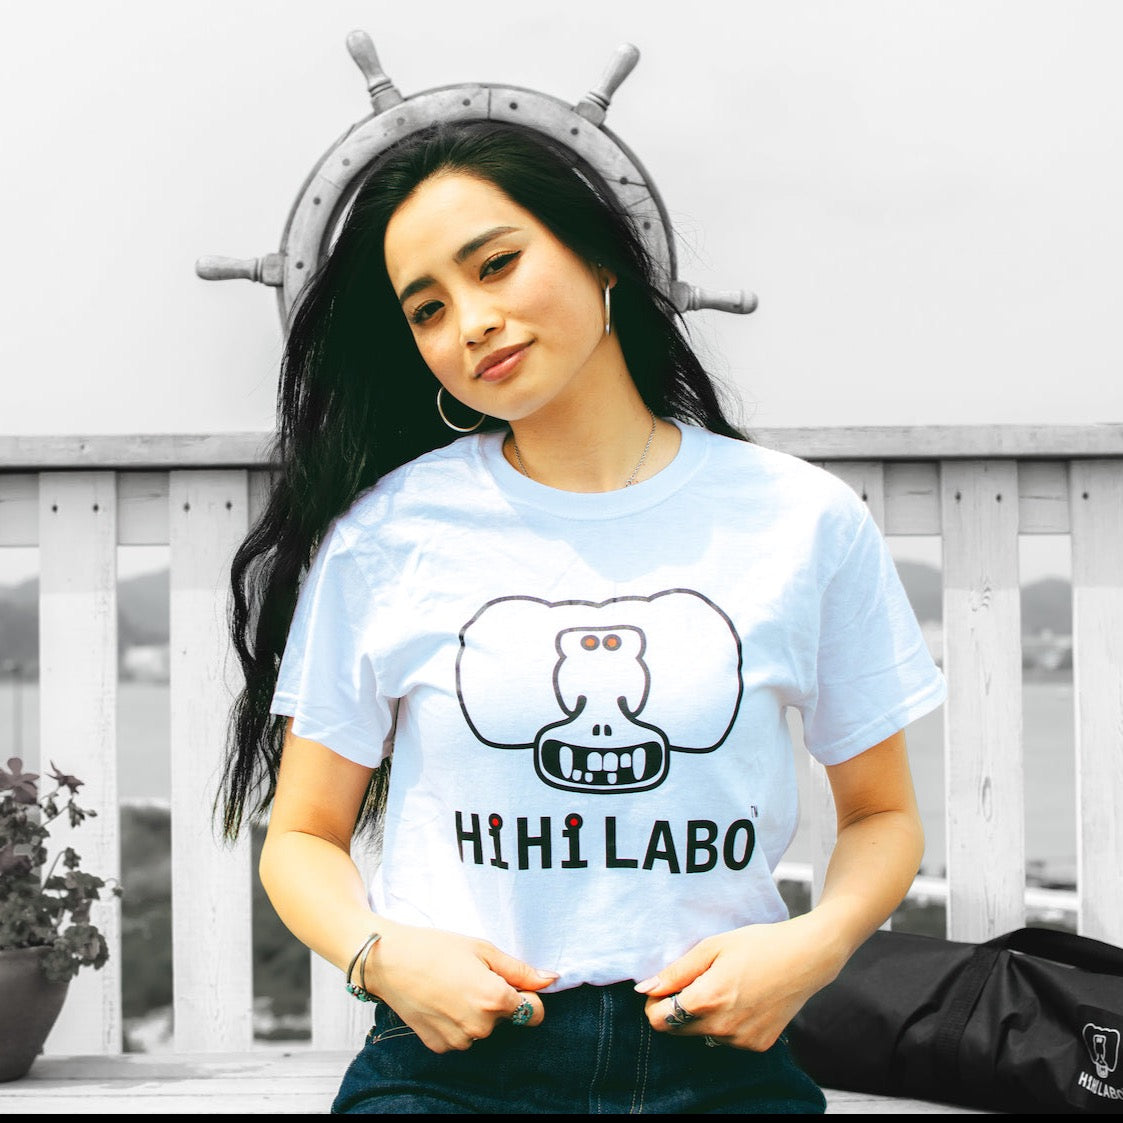 HiHiLABO ヒヒラボ アイコン ロゴ プリント 半袖 Tシャツ ユニセックス プレミアムコットン 綿100% デザイン